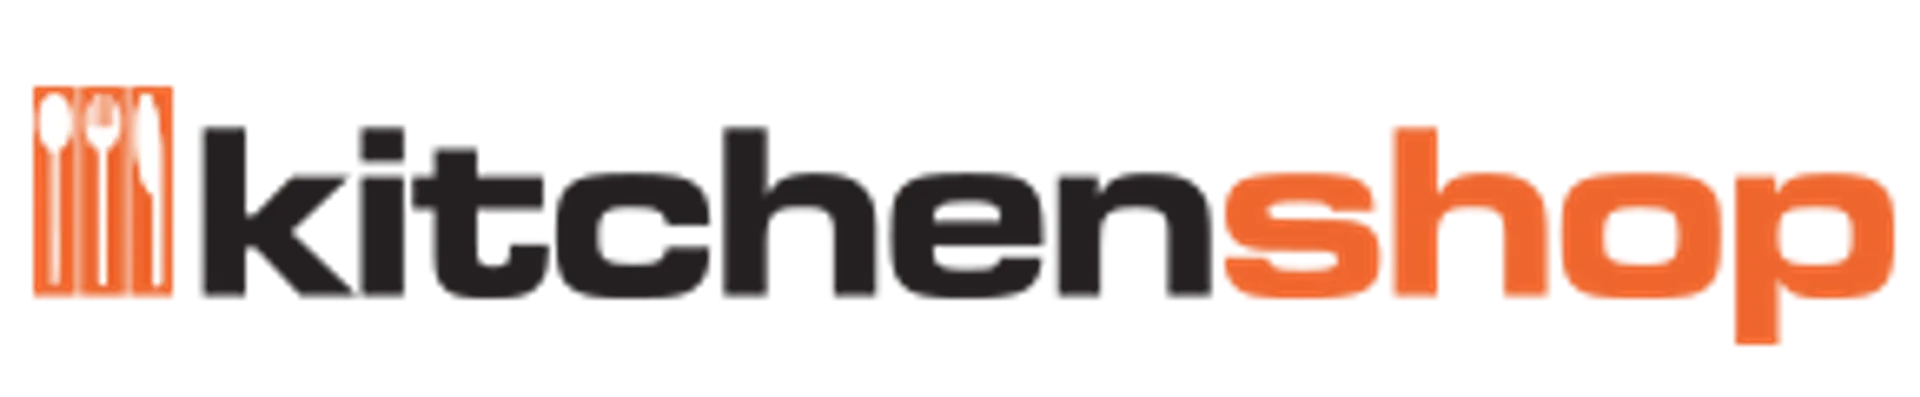 KITCHEN SHOP logo